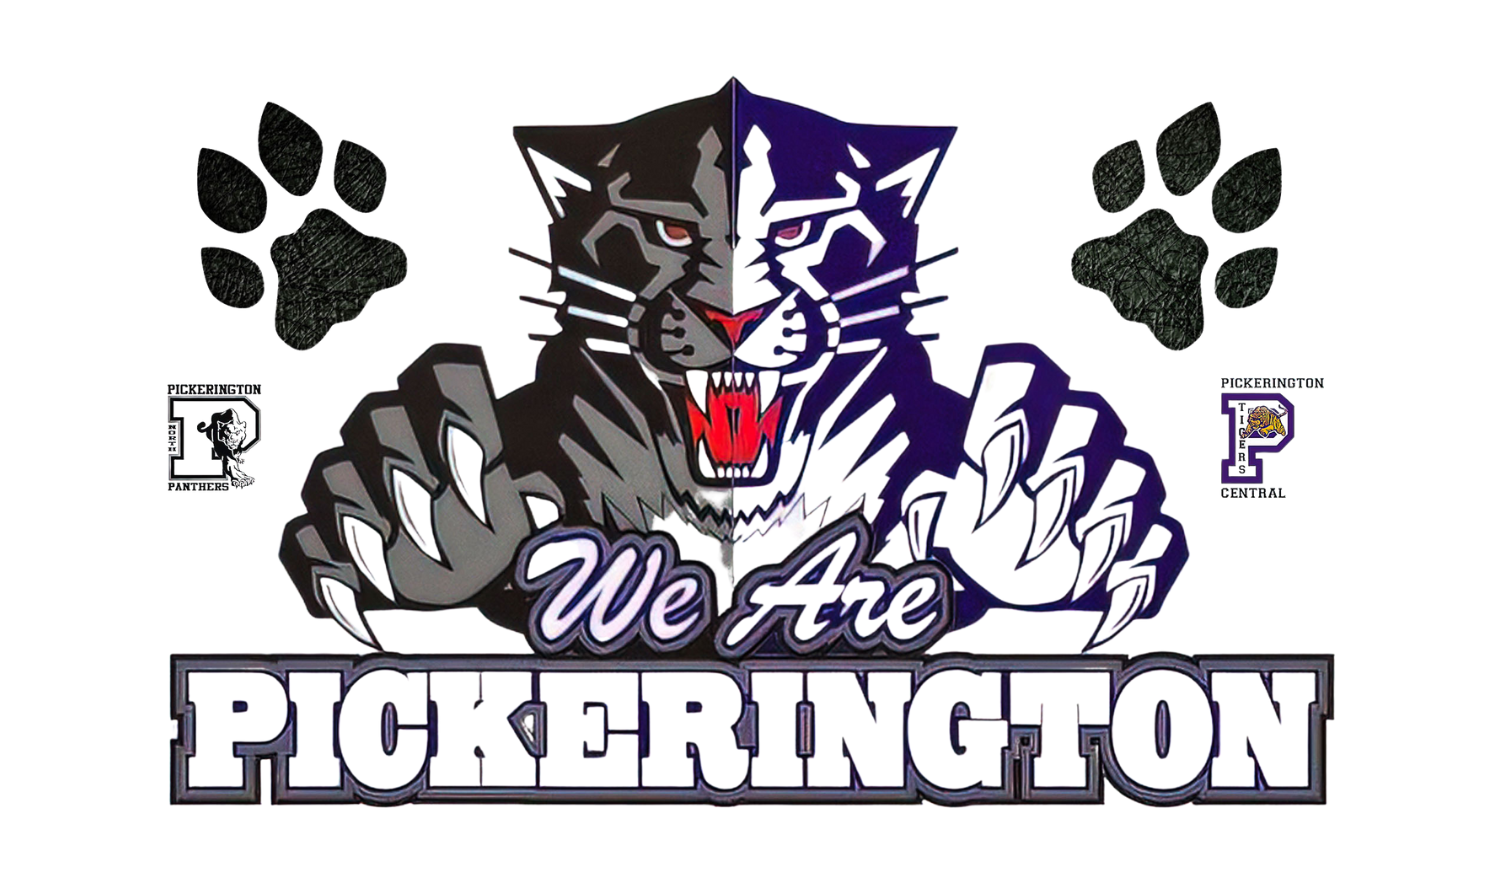 We are Pickerington